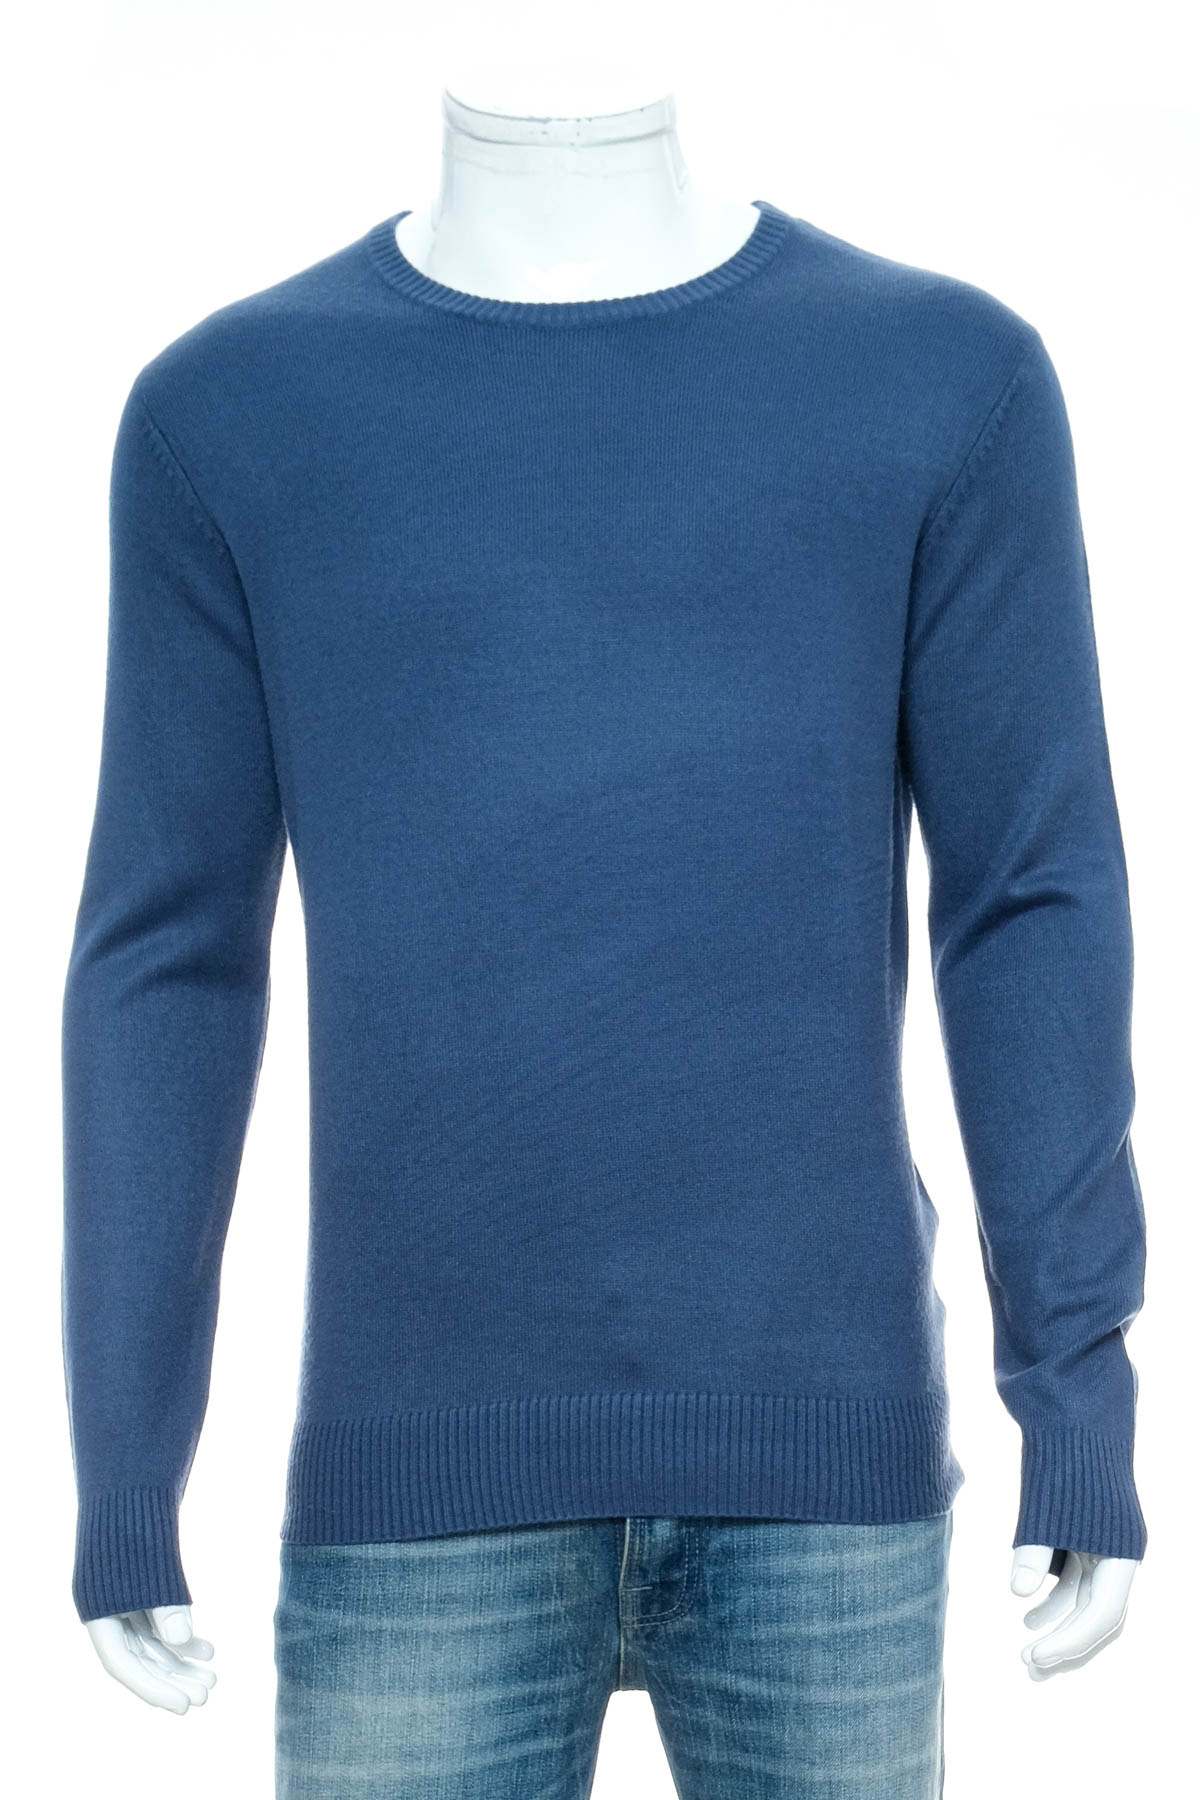 Men's sweater - Kenvelo - 0